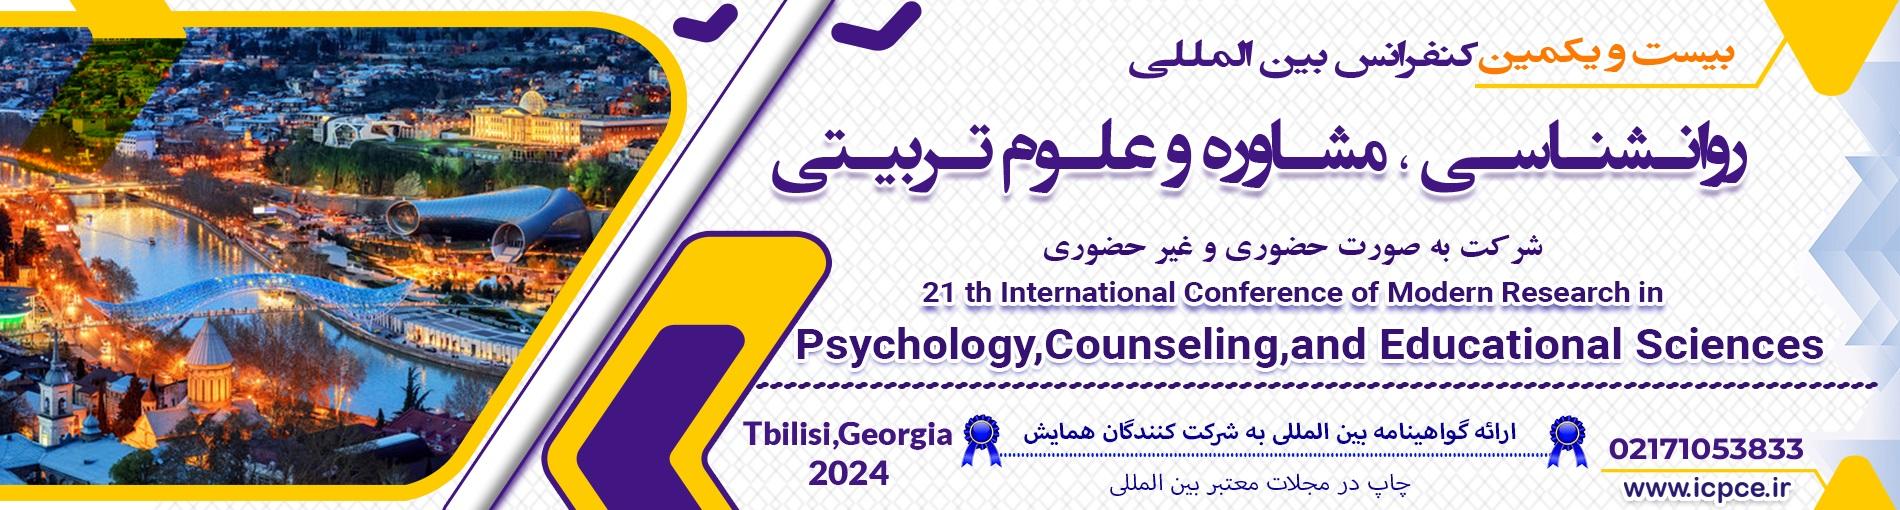 همایش بین المللی روانشناسی ، مشاوره و علوم تربیتی